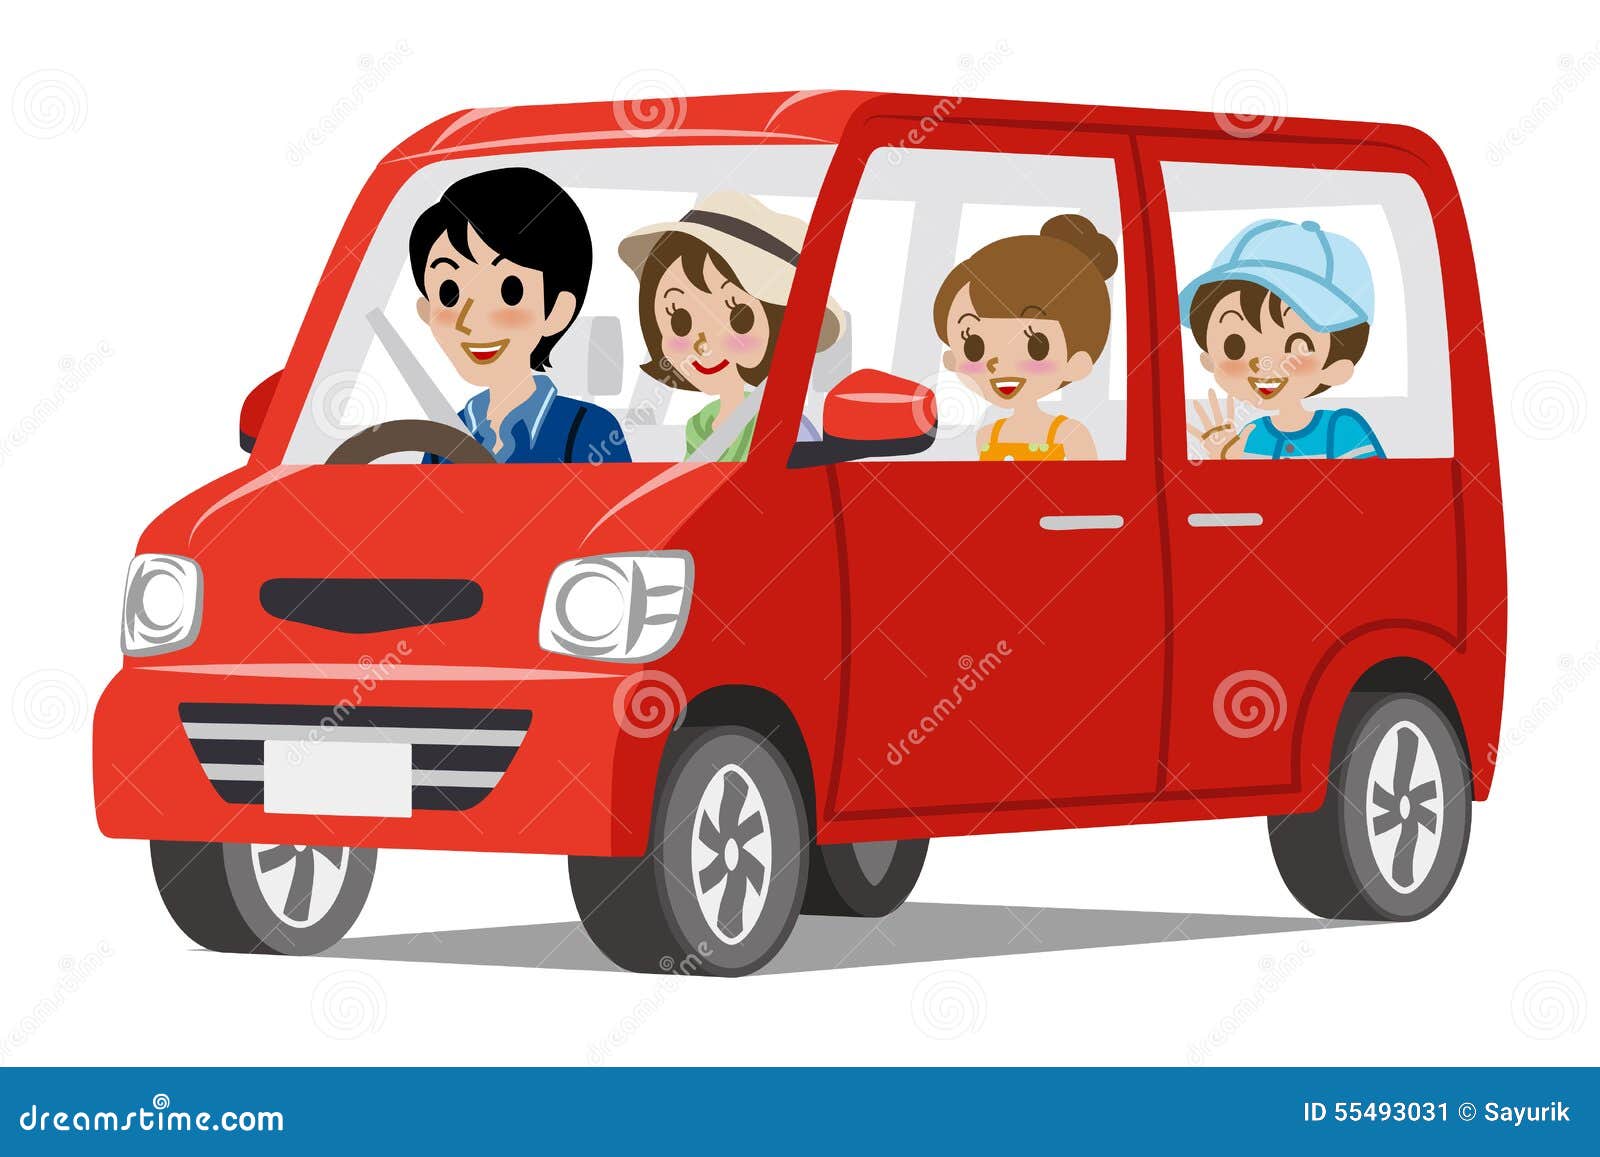 Коля с родителями едет на машине. Иллюстрация семейный автомобиль. Семейный автомобиль для детей на прозрачном фоне. Семейный автомобиль рисунок. Автомобиль с семьей мультяшный.